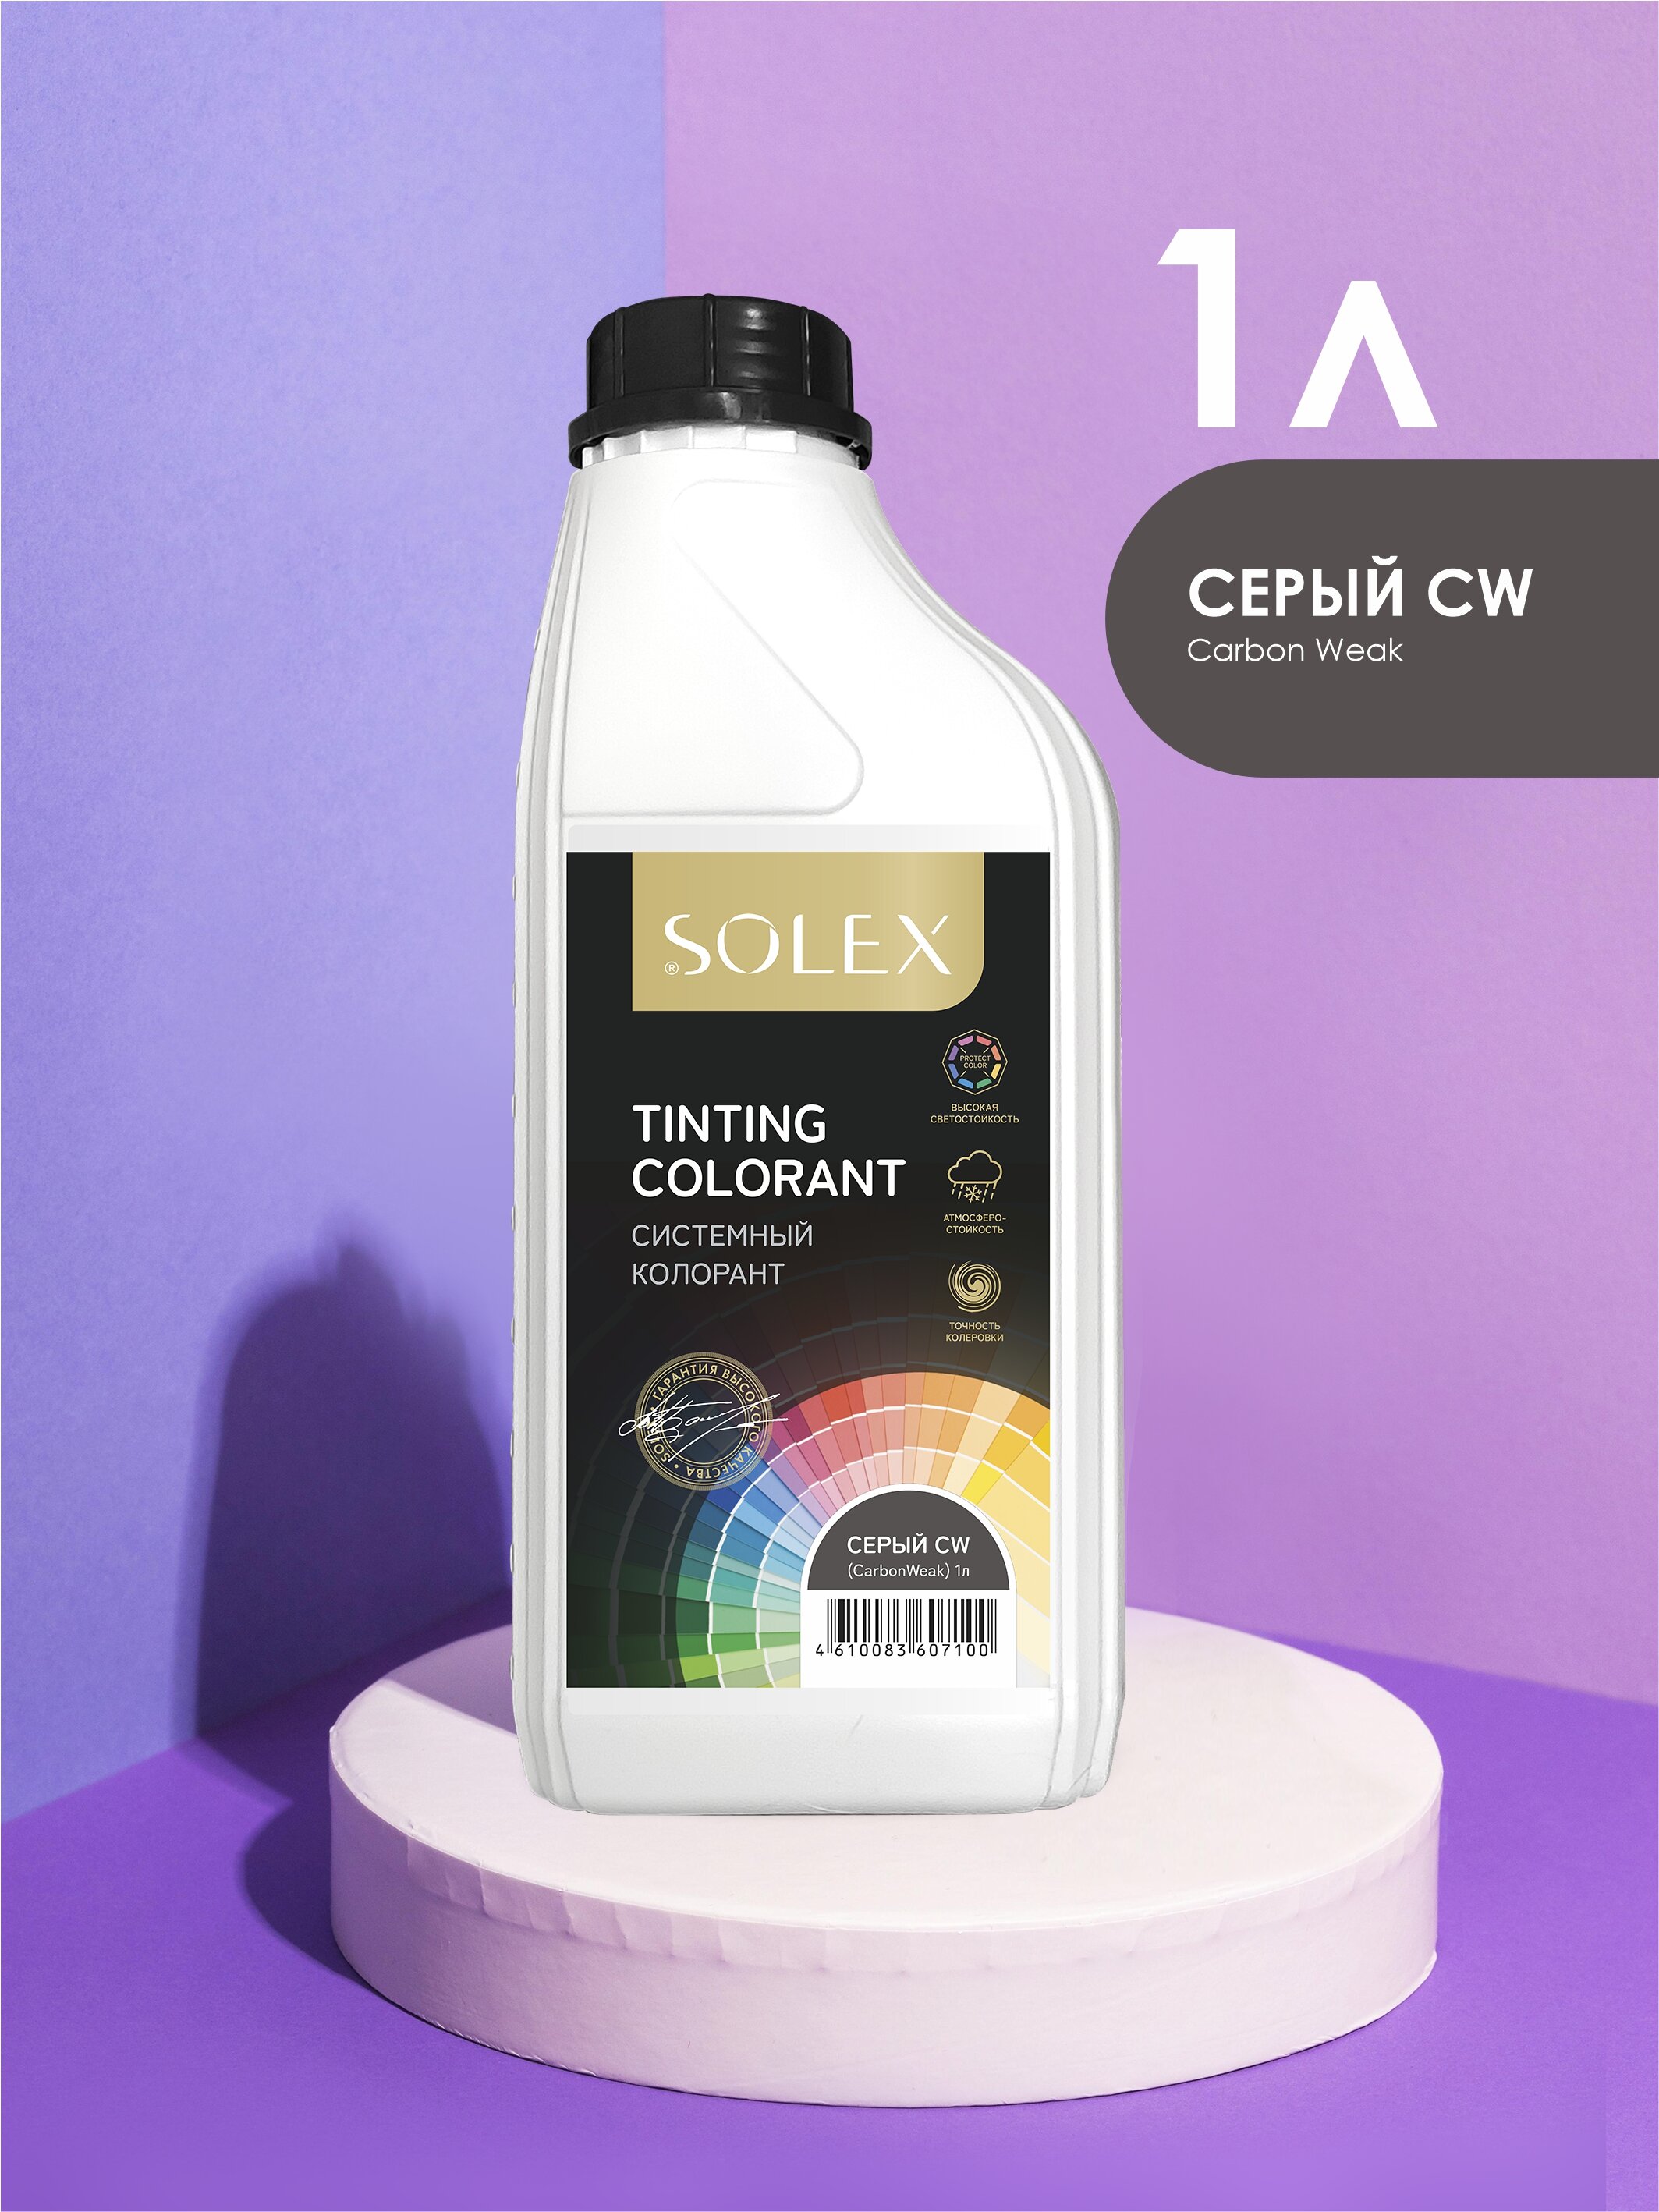 Колорант системный Solex Tinting colorant серый CW (CarbonWeak) 1л канистра